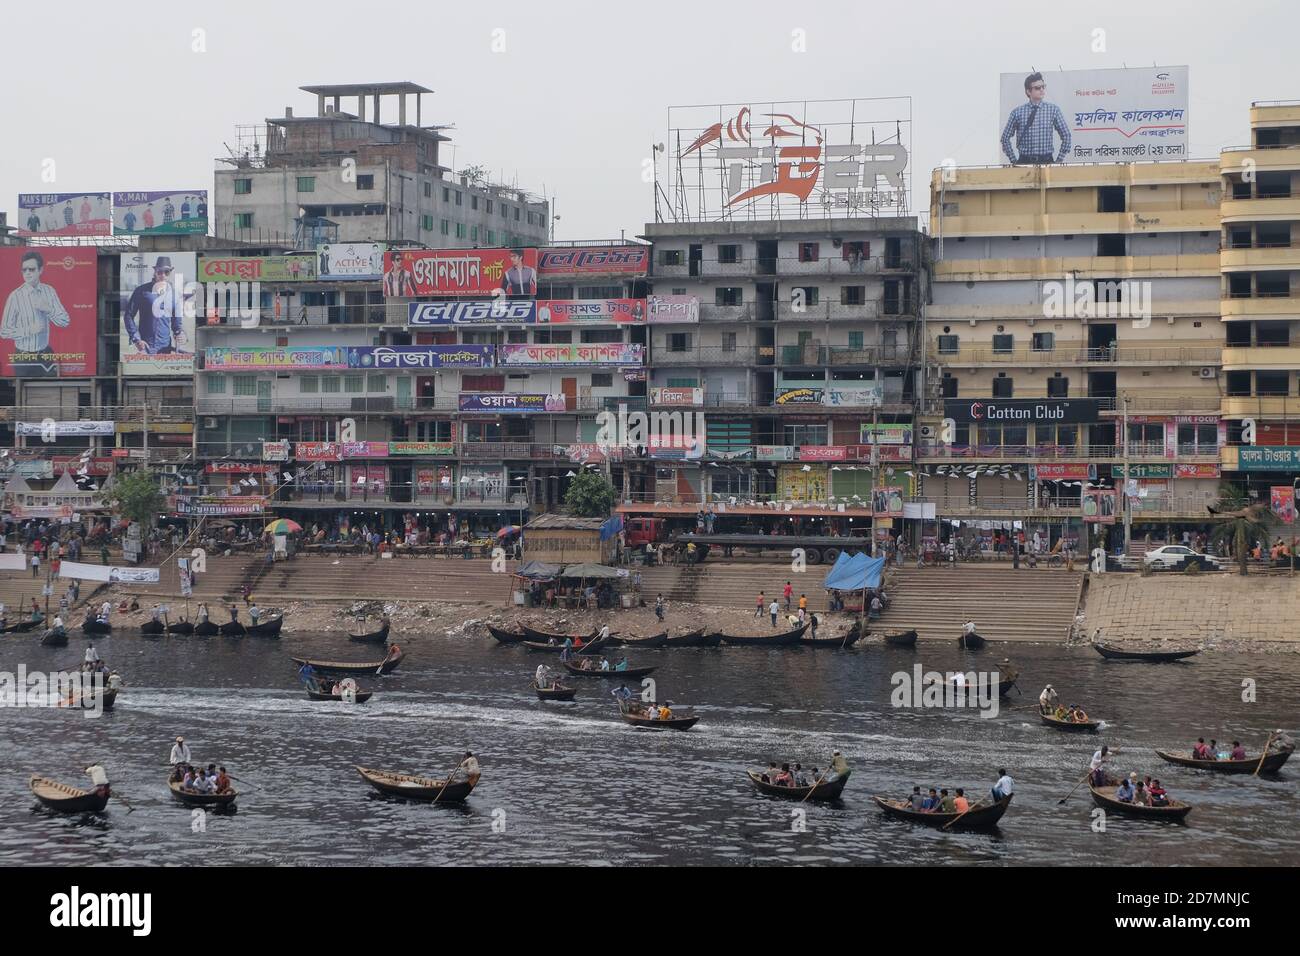 Sadarghat, Dhaka, Bangladesh Stock Photo